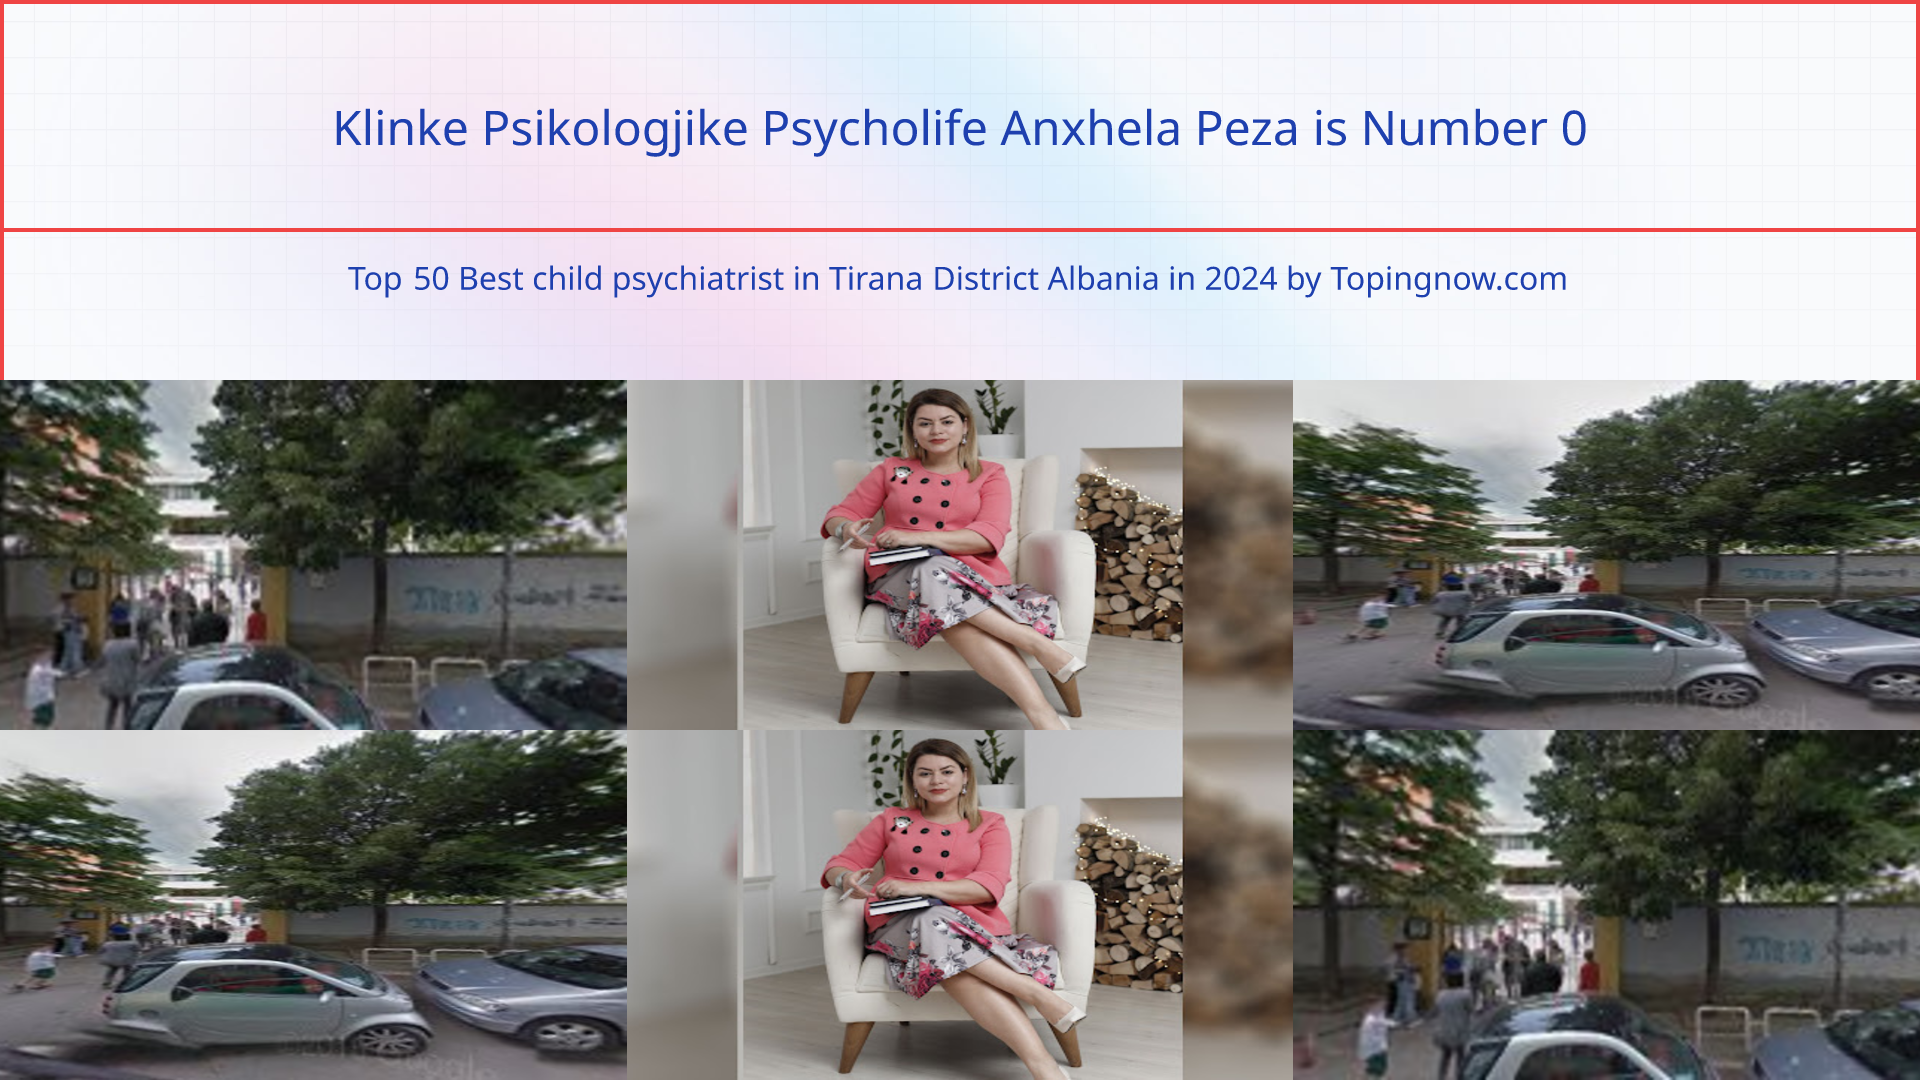 Klinke Psikologjike Psycholife Anxhela Peza: Top 50 Best child psychiatrist in Tirana District Albania in 2024